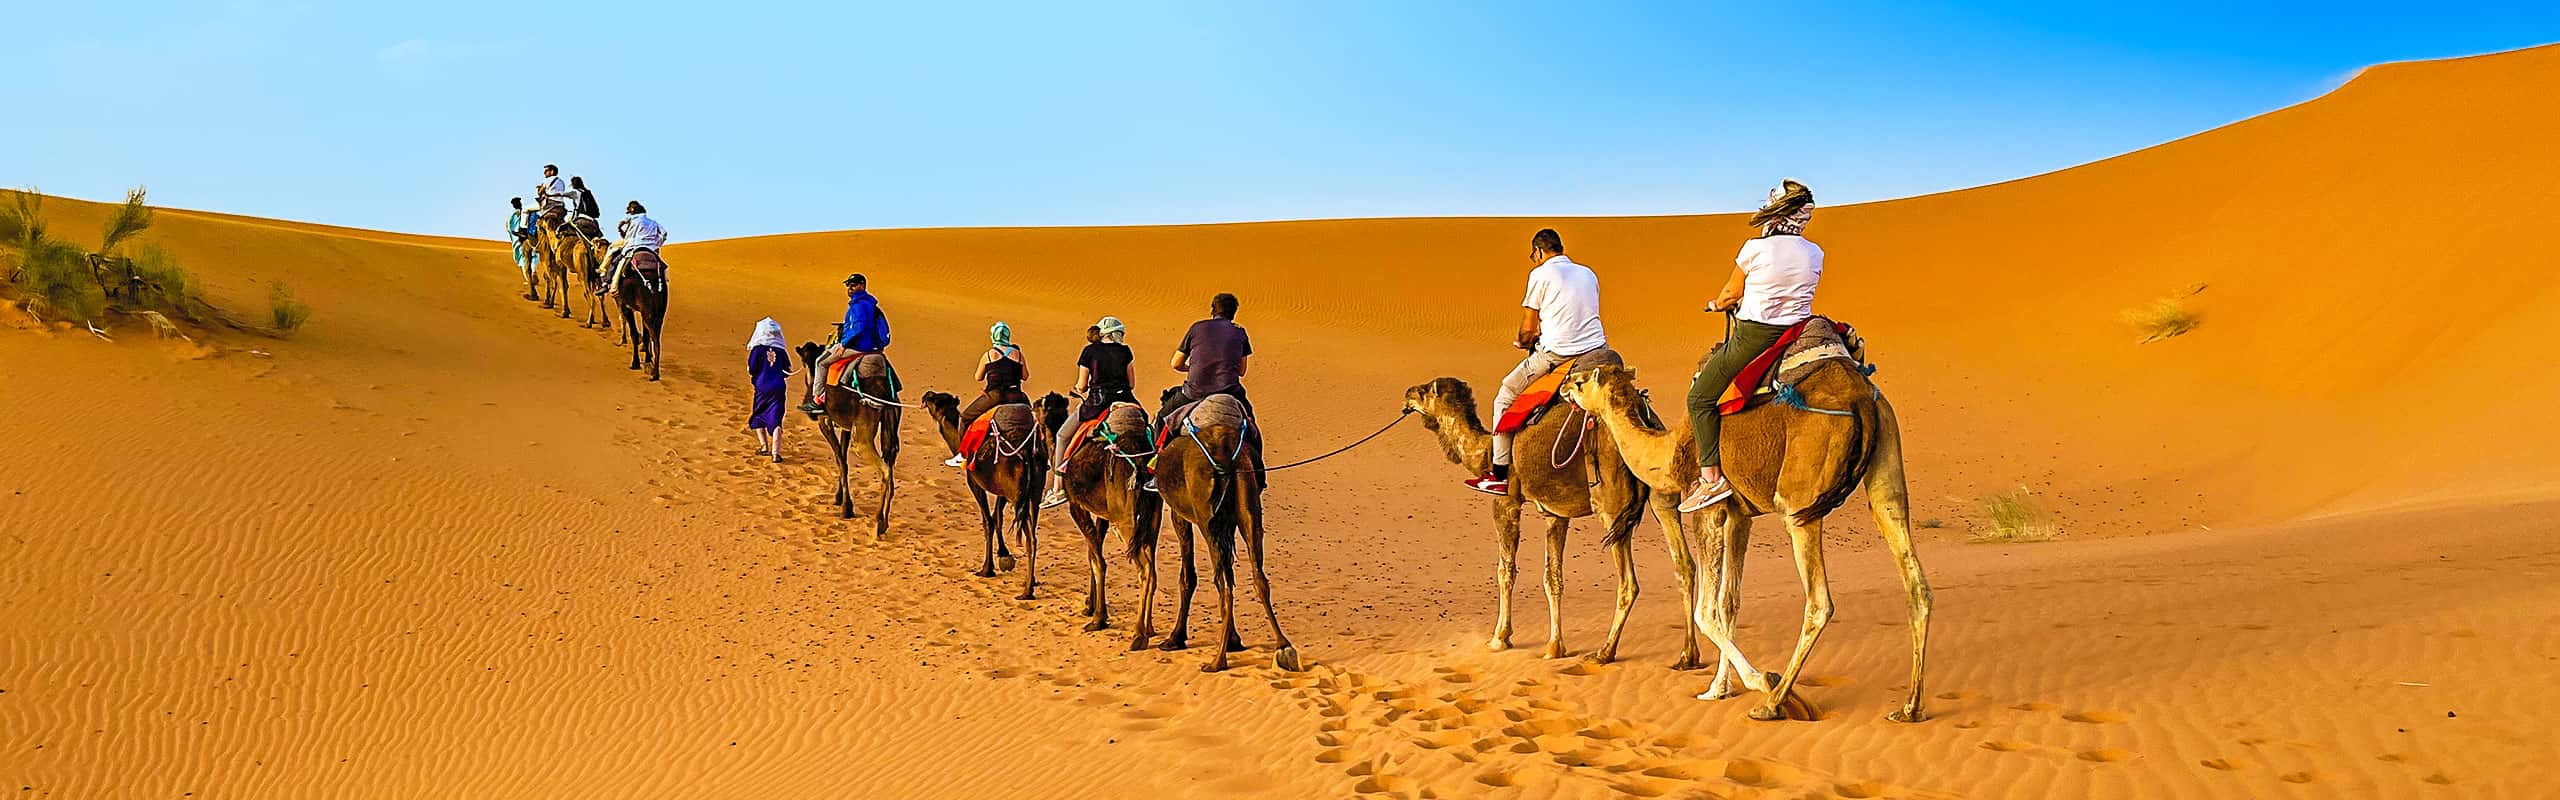 Camel ride across Sahara Desert